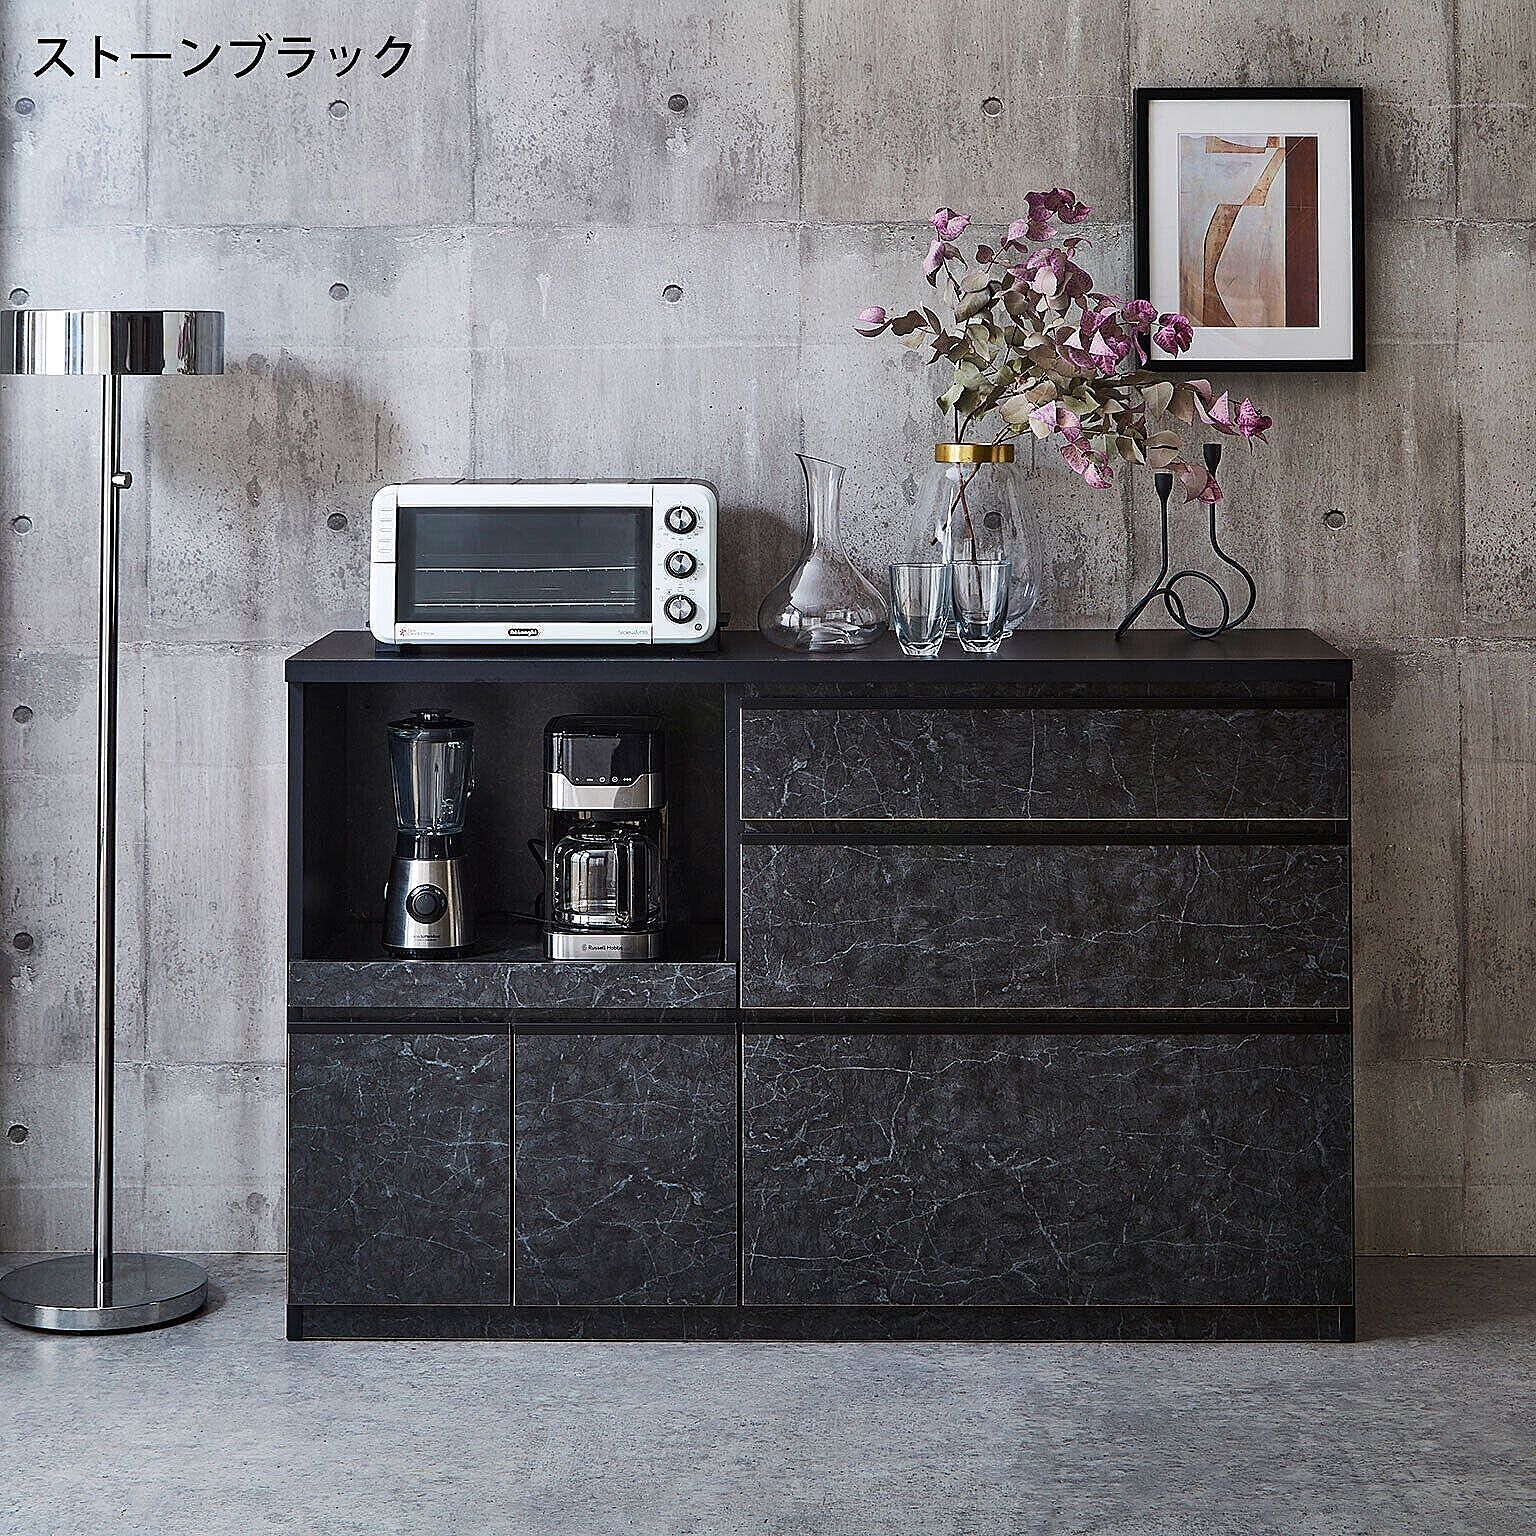 アンサンブル 完成品 日本製 キッチンカウンター 幅139.1cm レンジ台 大理石調 ストーン柄 ベージュ